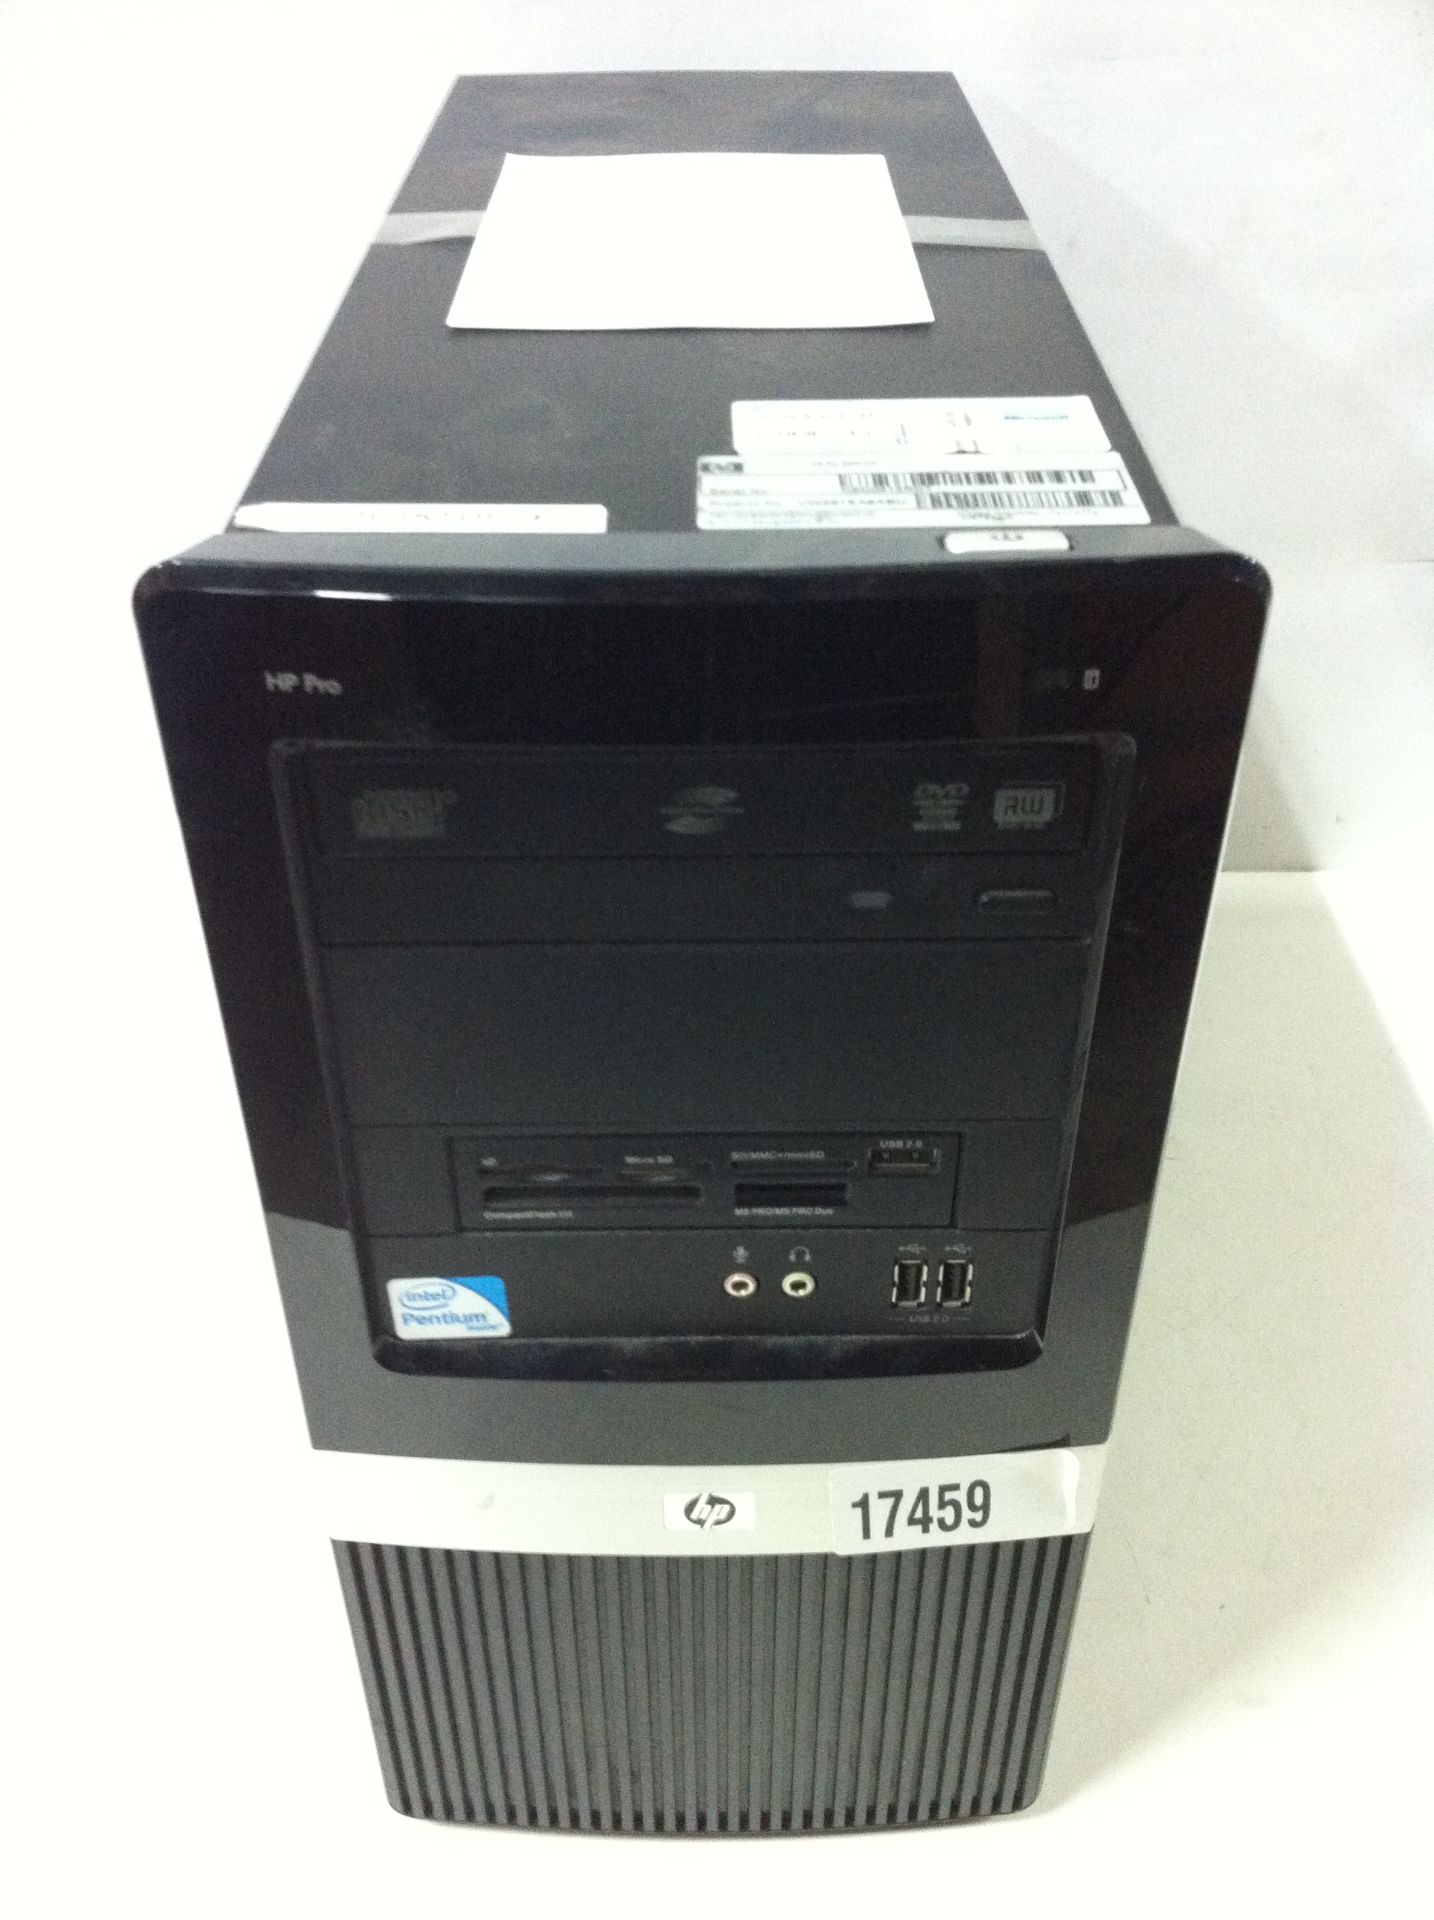 5x HP Desktop PC's - See Description - Image 5 of 6